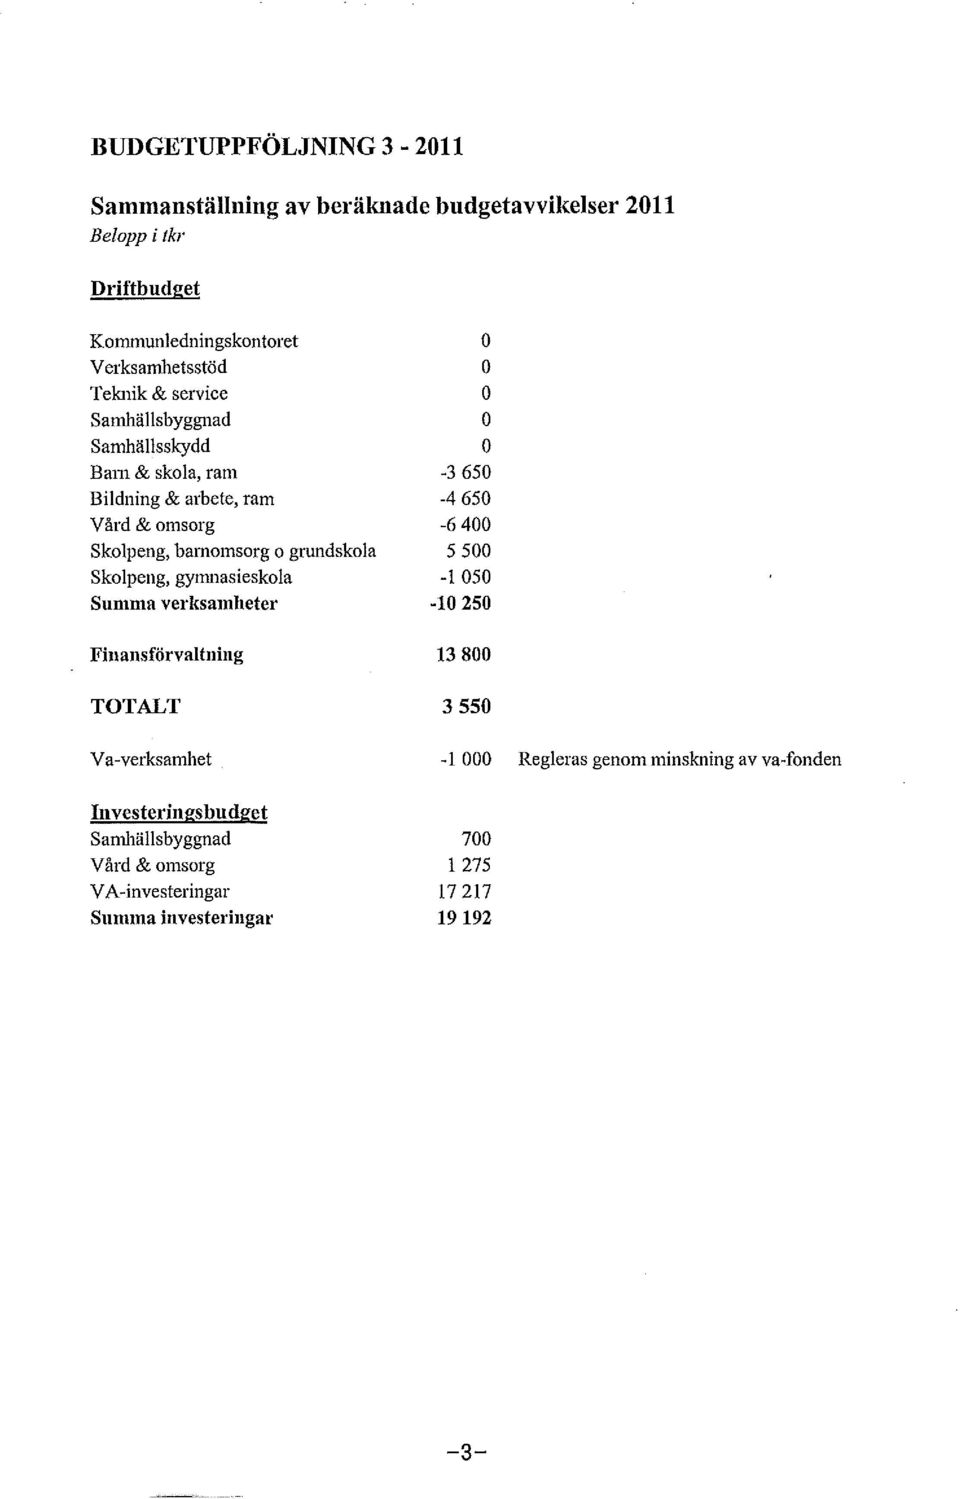 gymnasieskla Summa verksamheter Finansförvaltning TOTALT Va-verksamhet Illvesteringsbudget Samhällsbyggnad Vård & msrg VA-investeringar